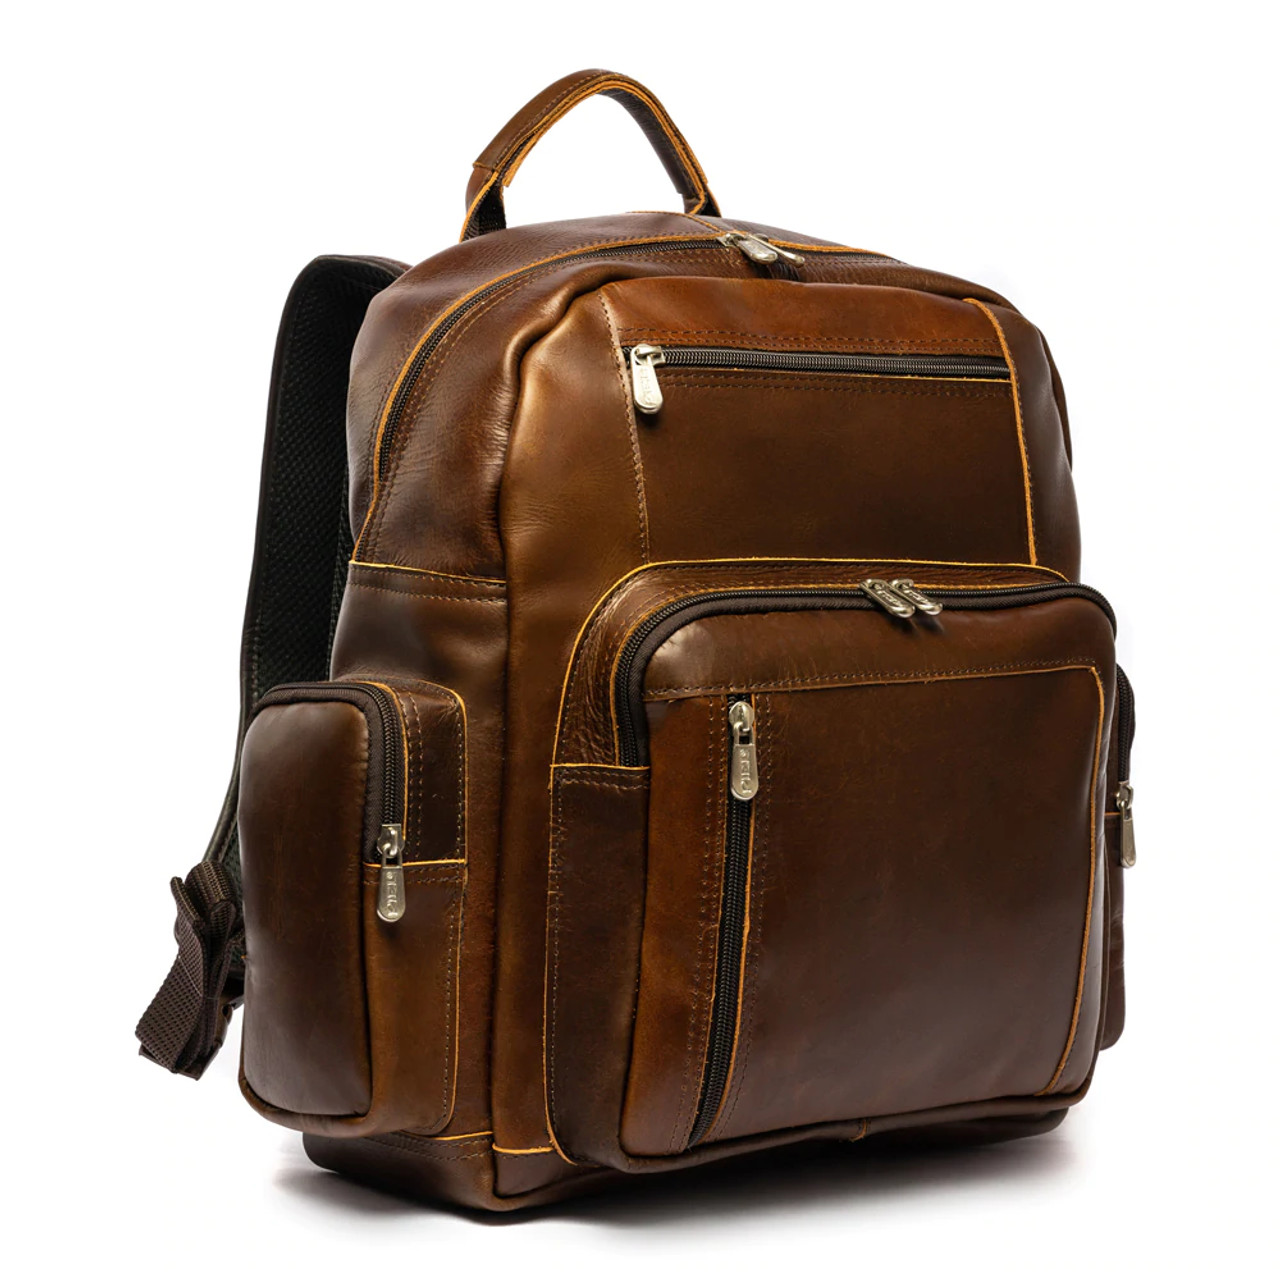 Piel Leather Vintage Travel Backpack 3028